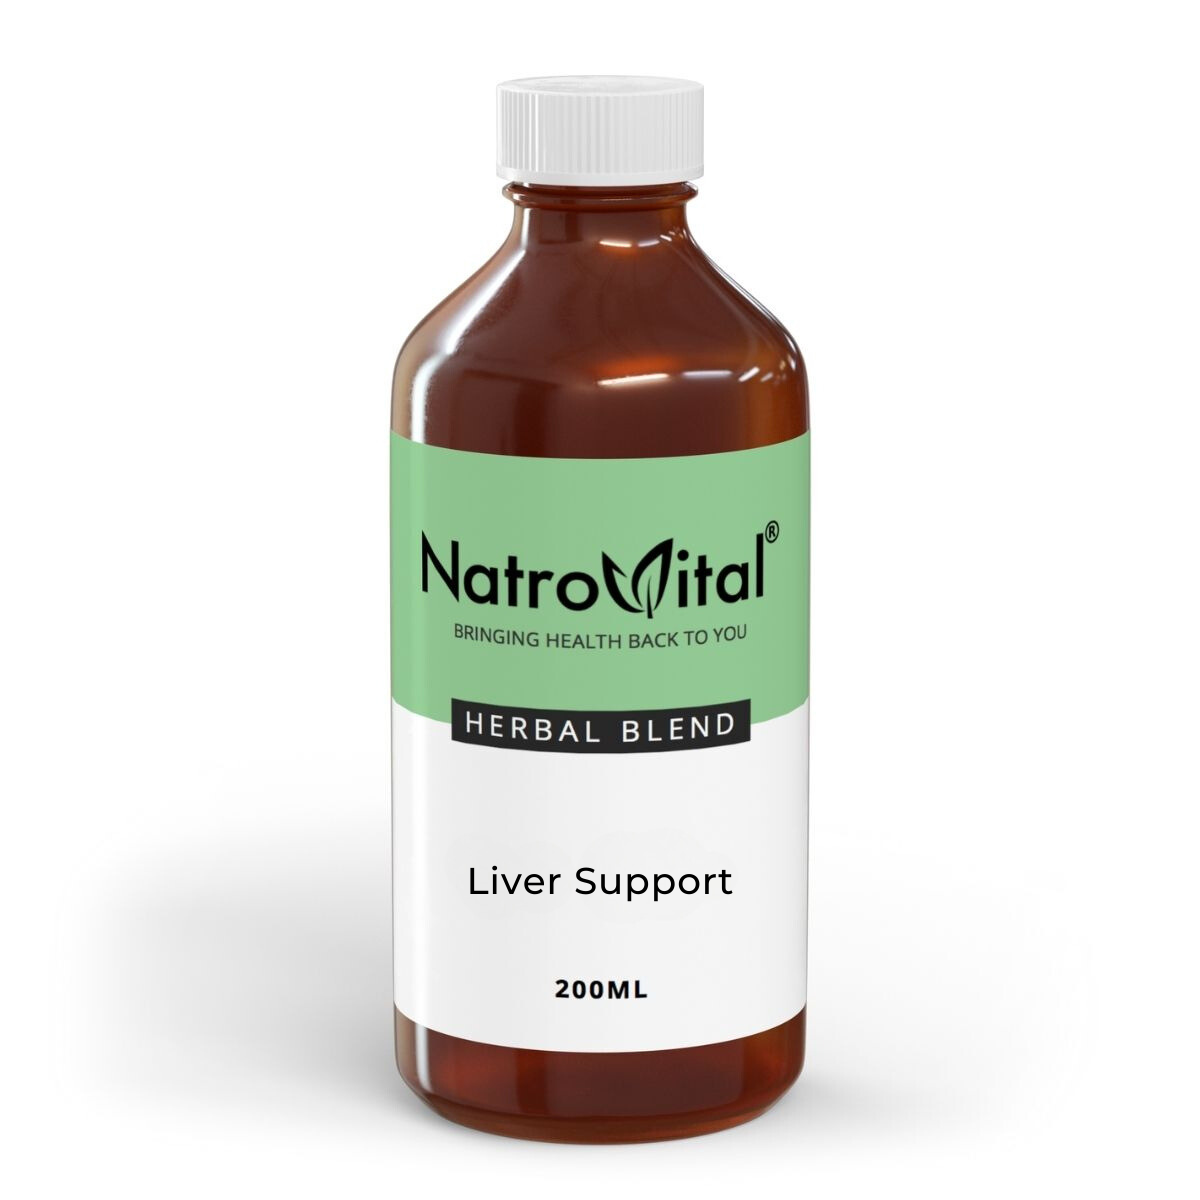 NatroVital Liver Support